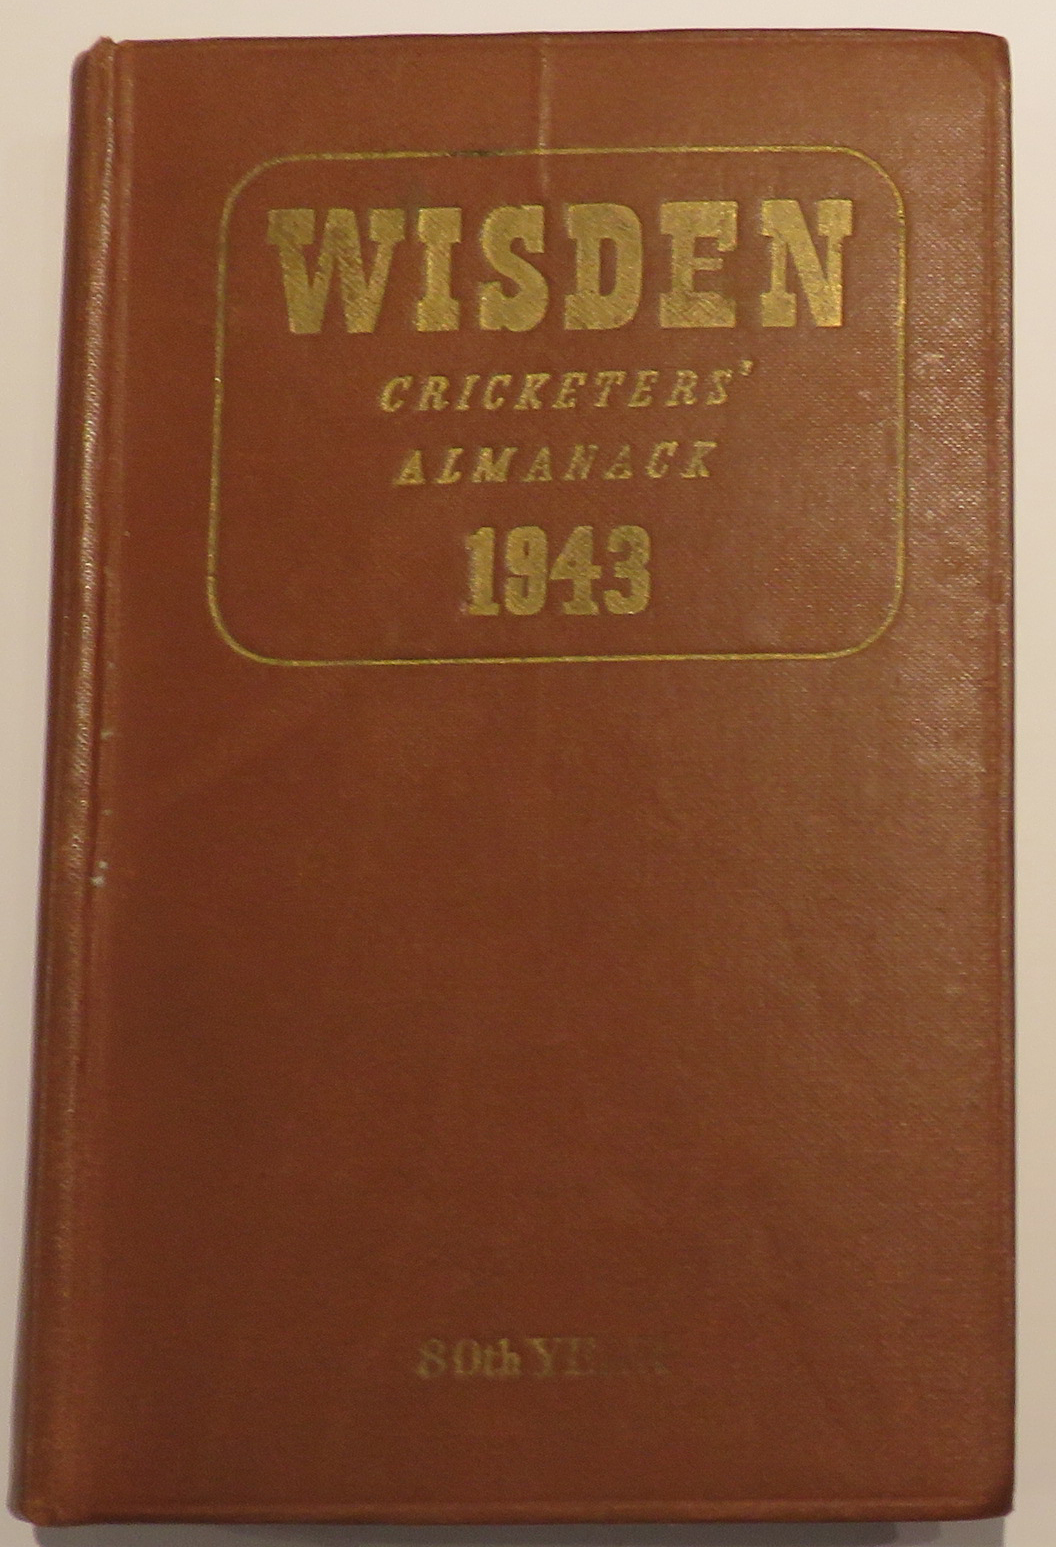 Wisden Cricketers' Almanack 1943